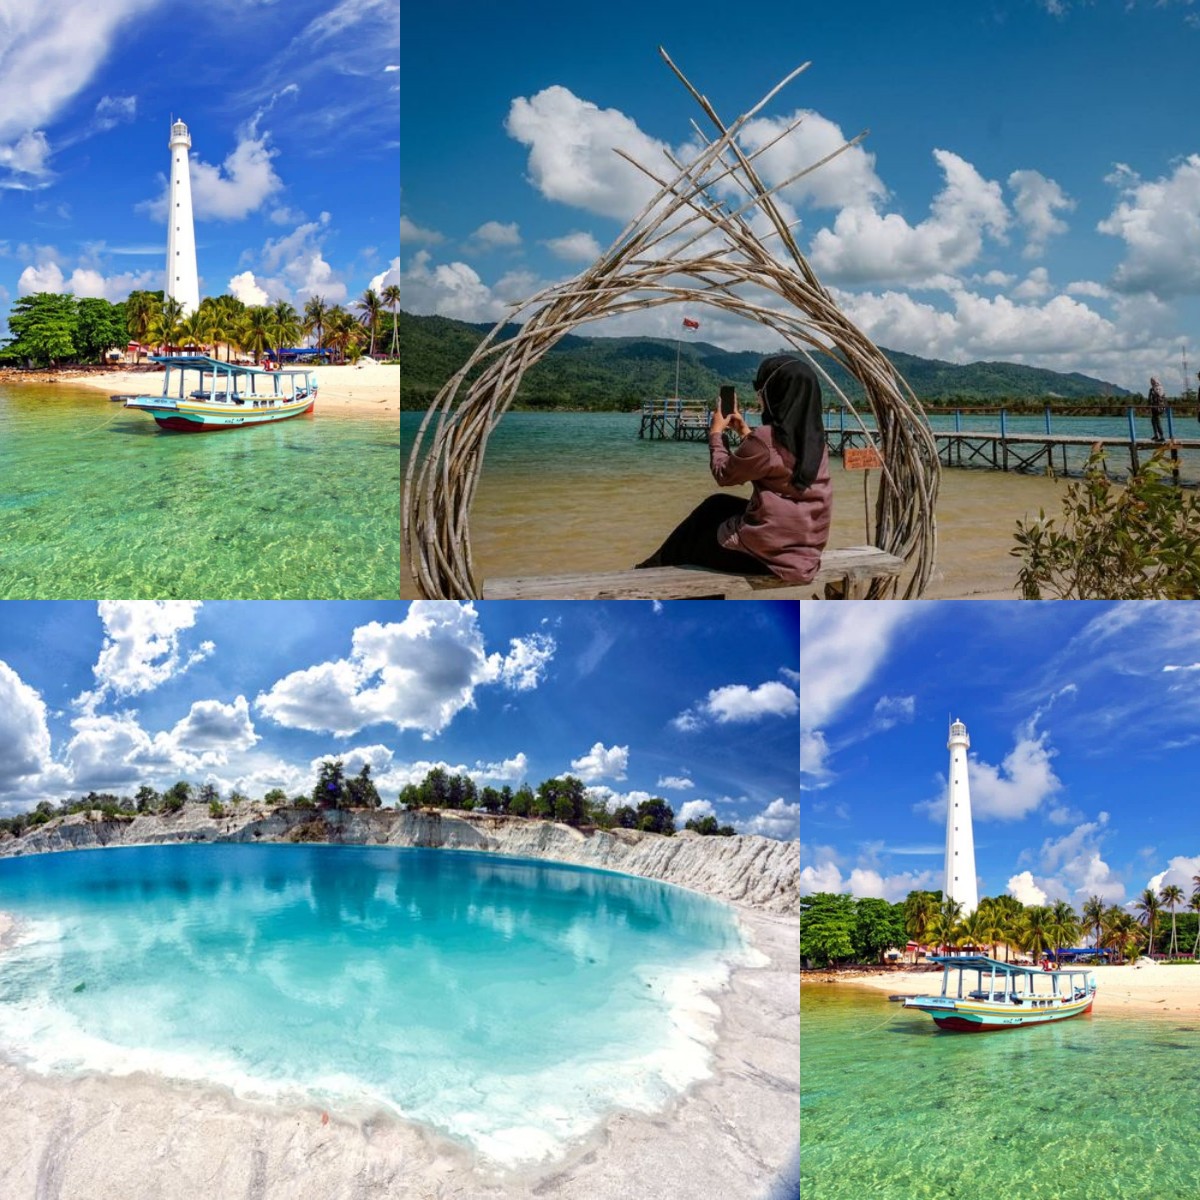 Inilah Sederet Wisata Pulau Bangka Belitung, Dari Pantai Hingga Danau yang Menakjubkan!